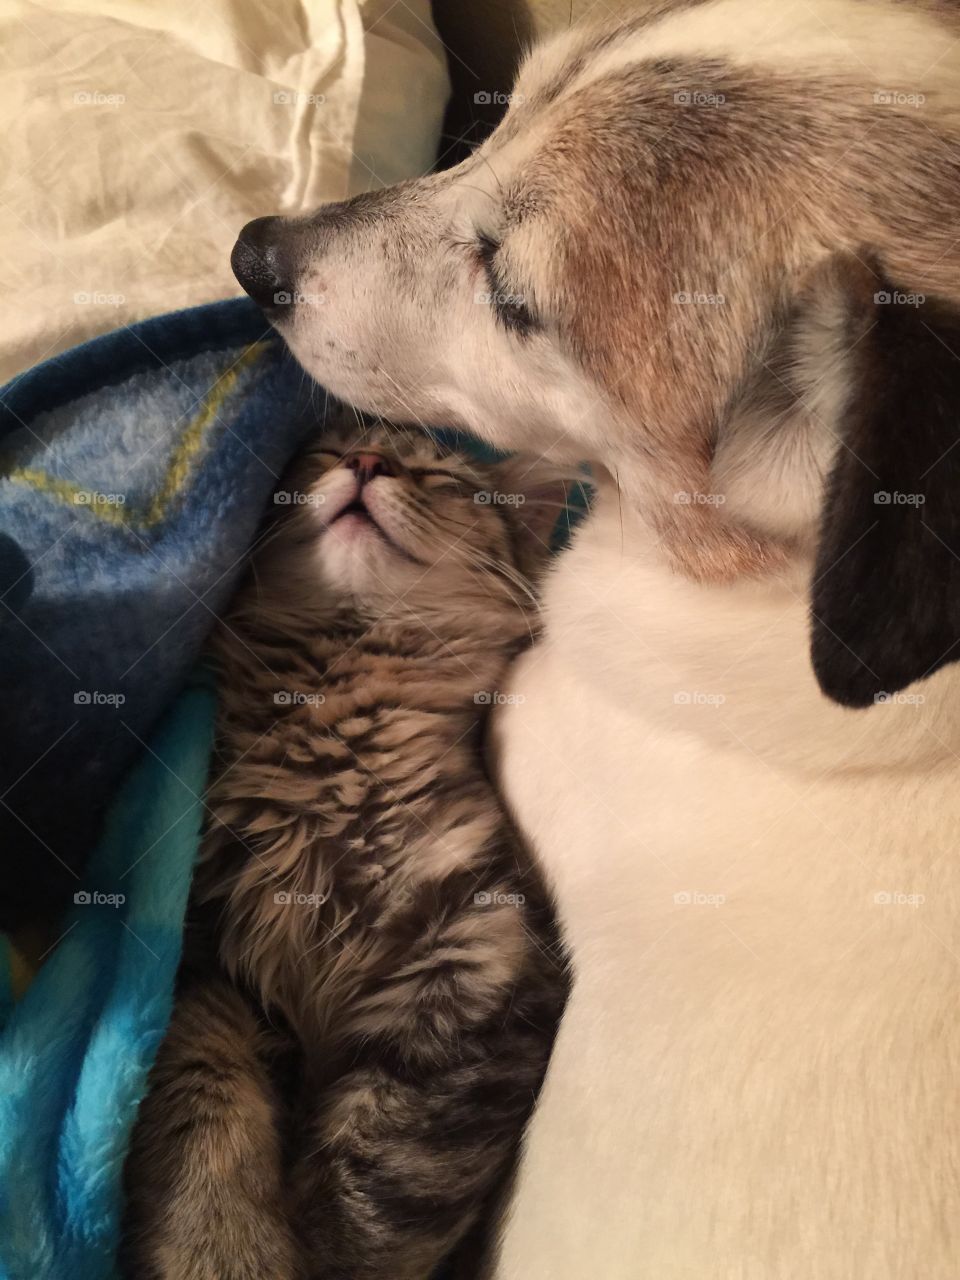 Kitten cozy with dog. Kitten cozy with dog